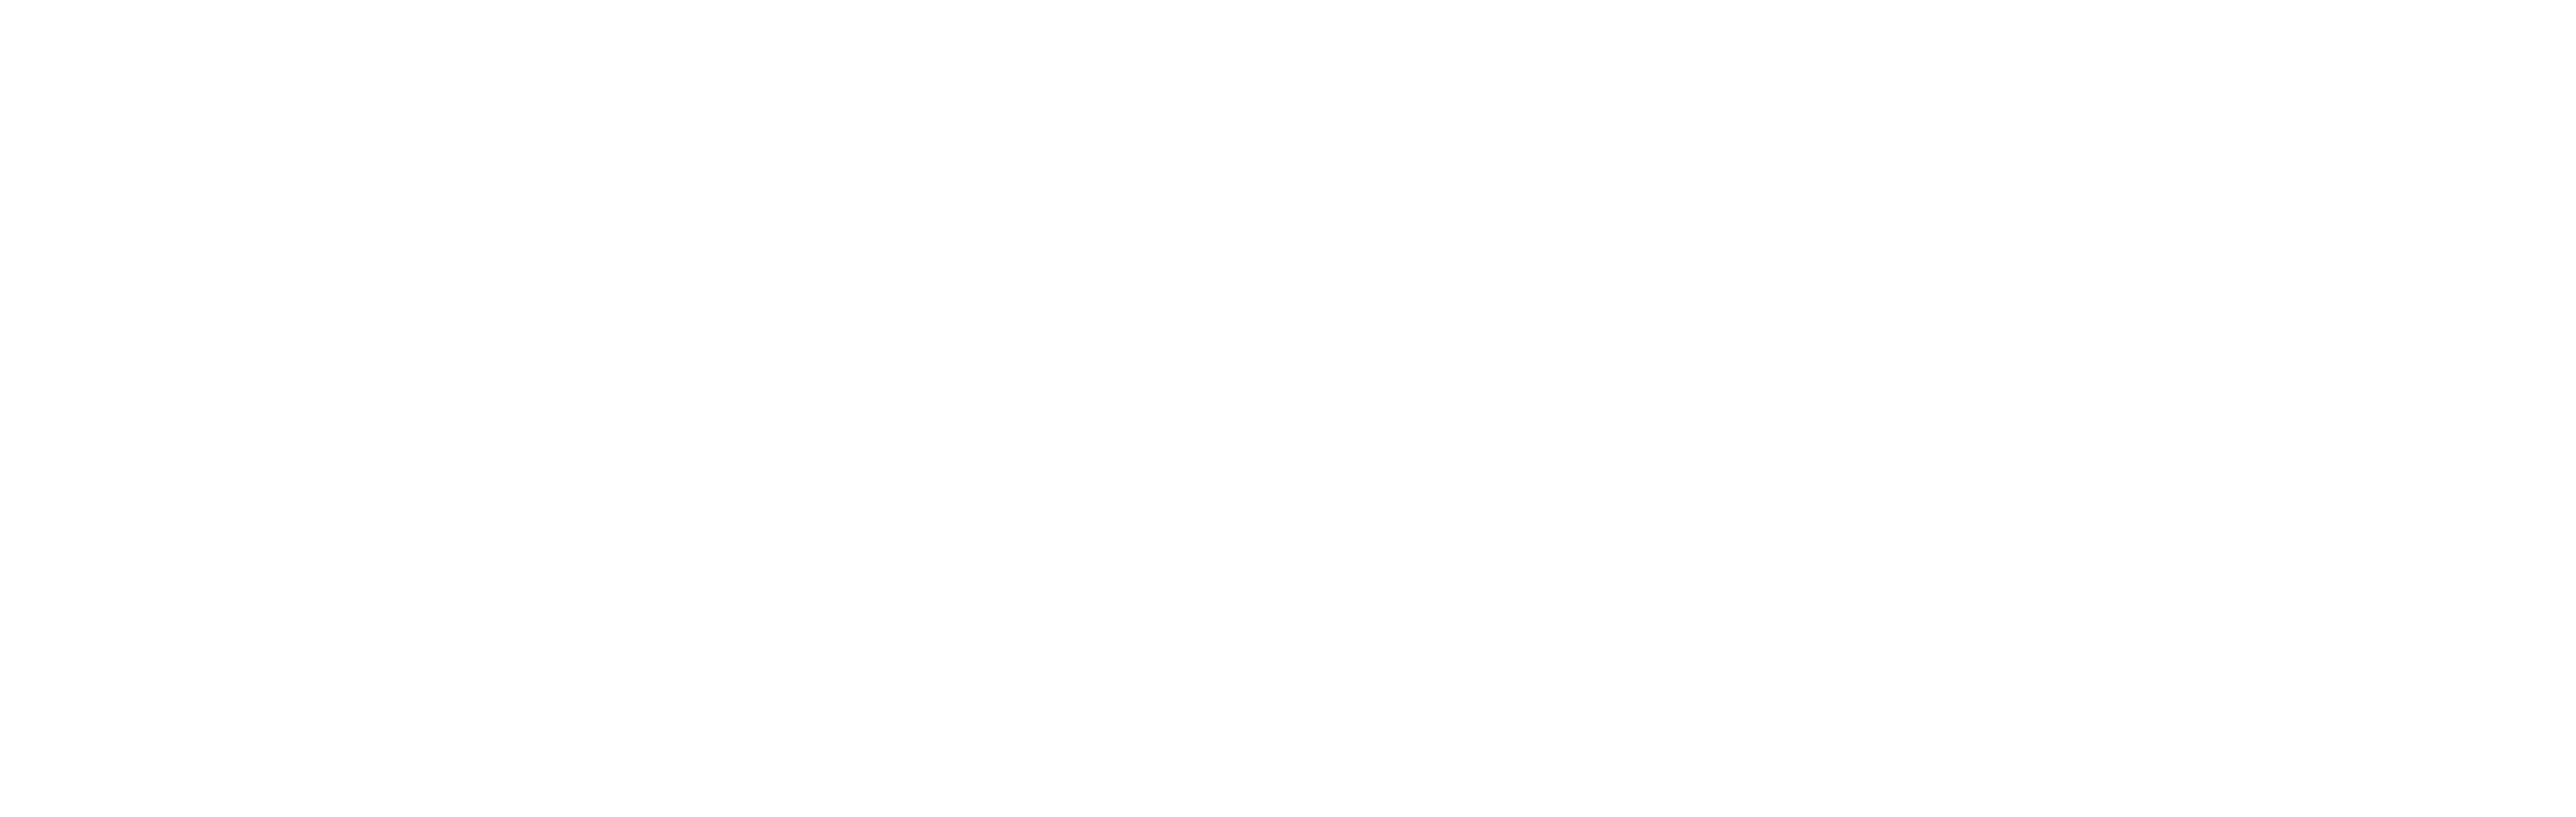 Verifica Tu Balance